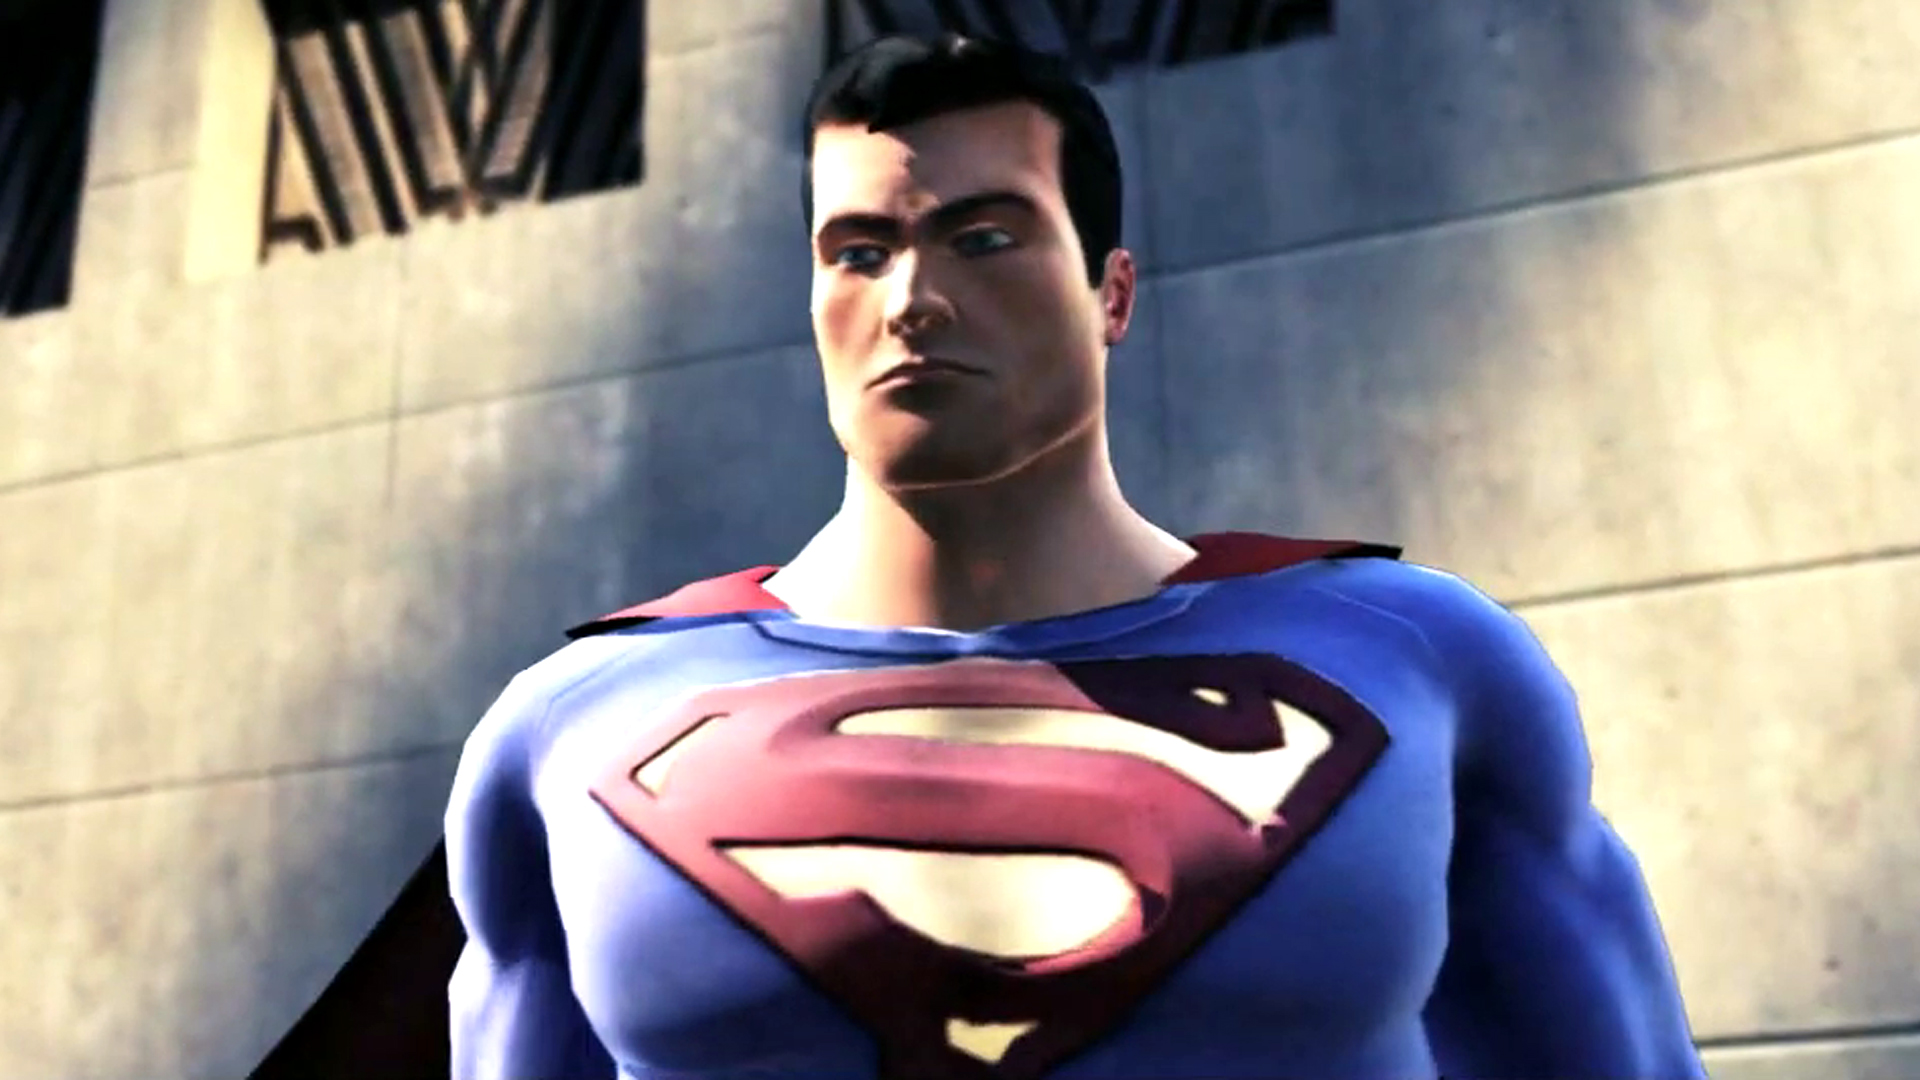 سوپرمن تقریباً یک بازی در کنار Batman: Arkham Asylum توسط توسعه دهندگان Rogue Squadron دریافت کرد